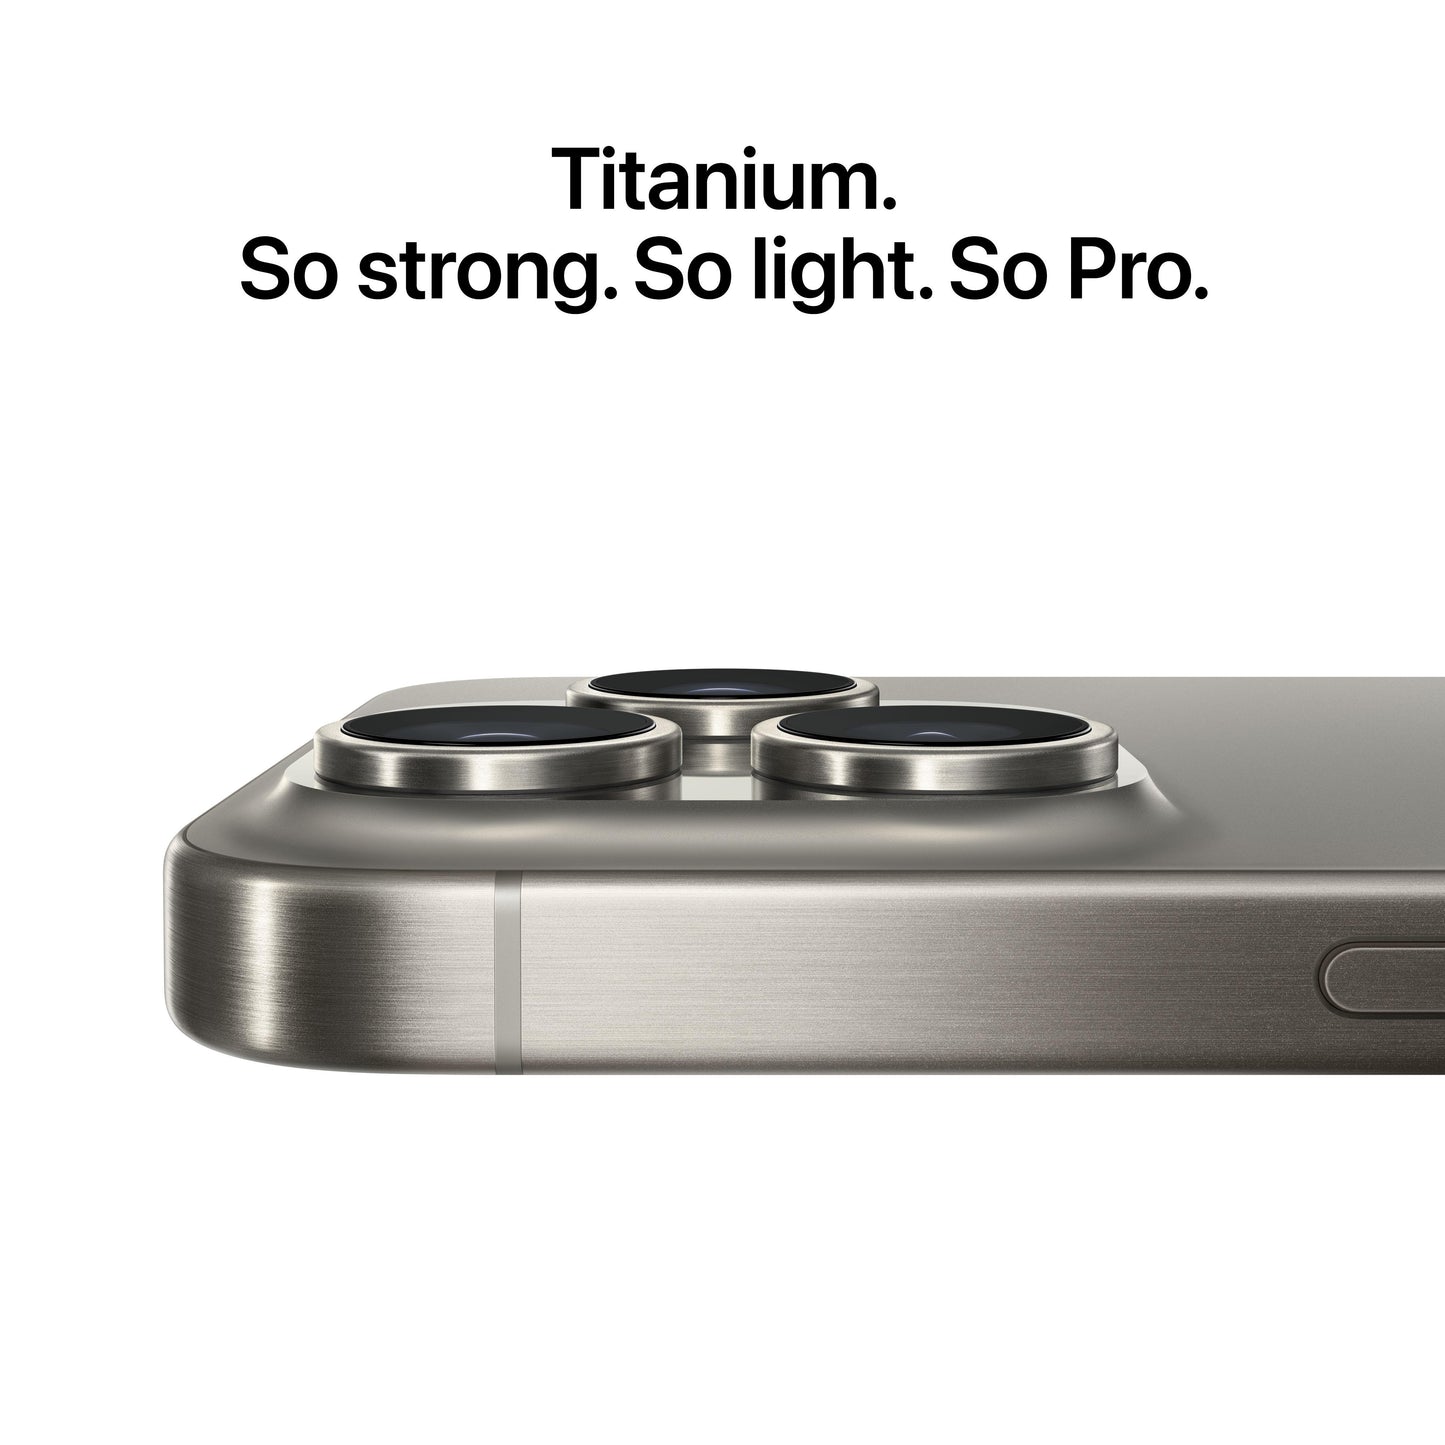 iPhone 15 Pro, 1 TB, Wit titanium 